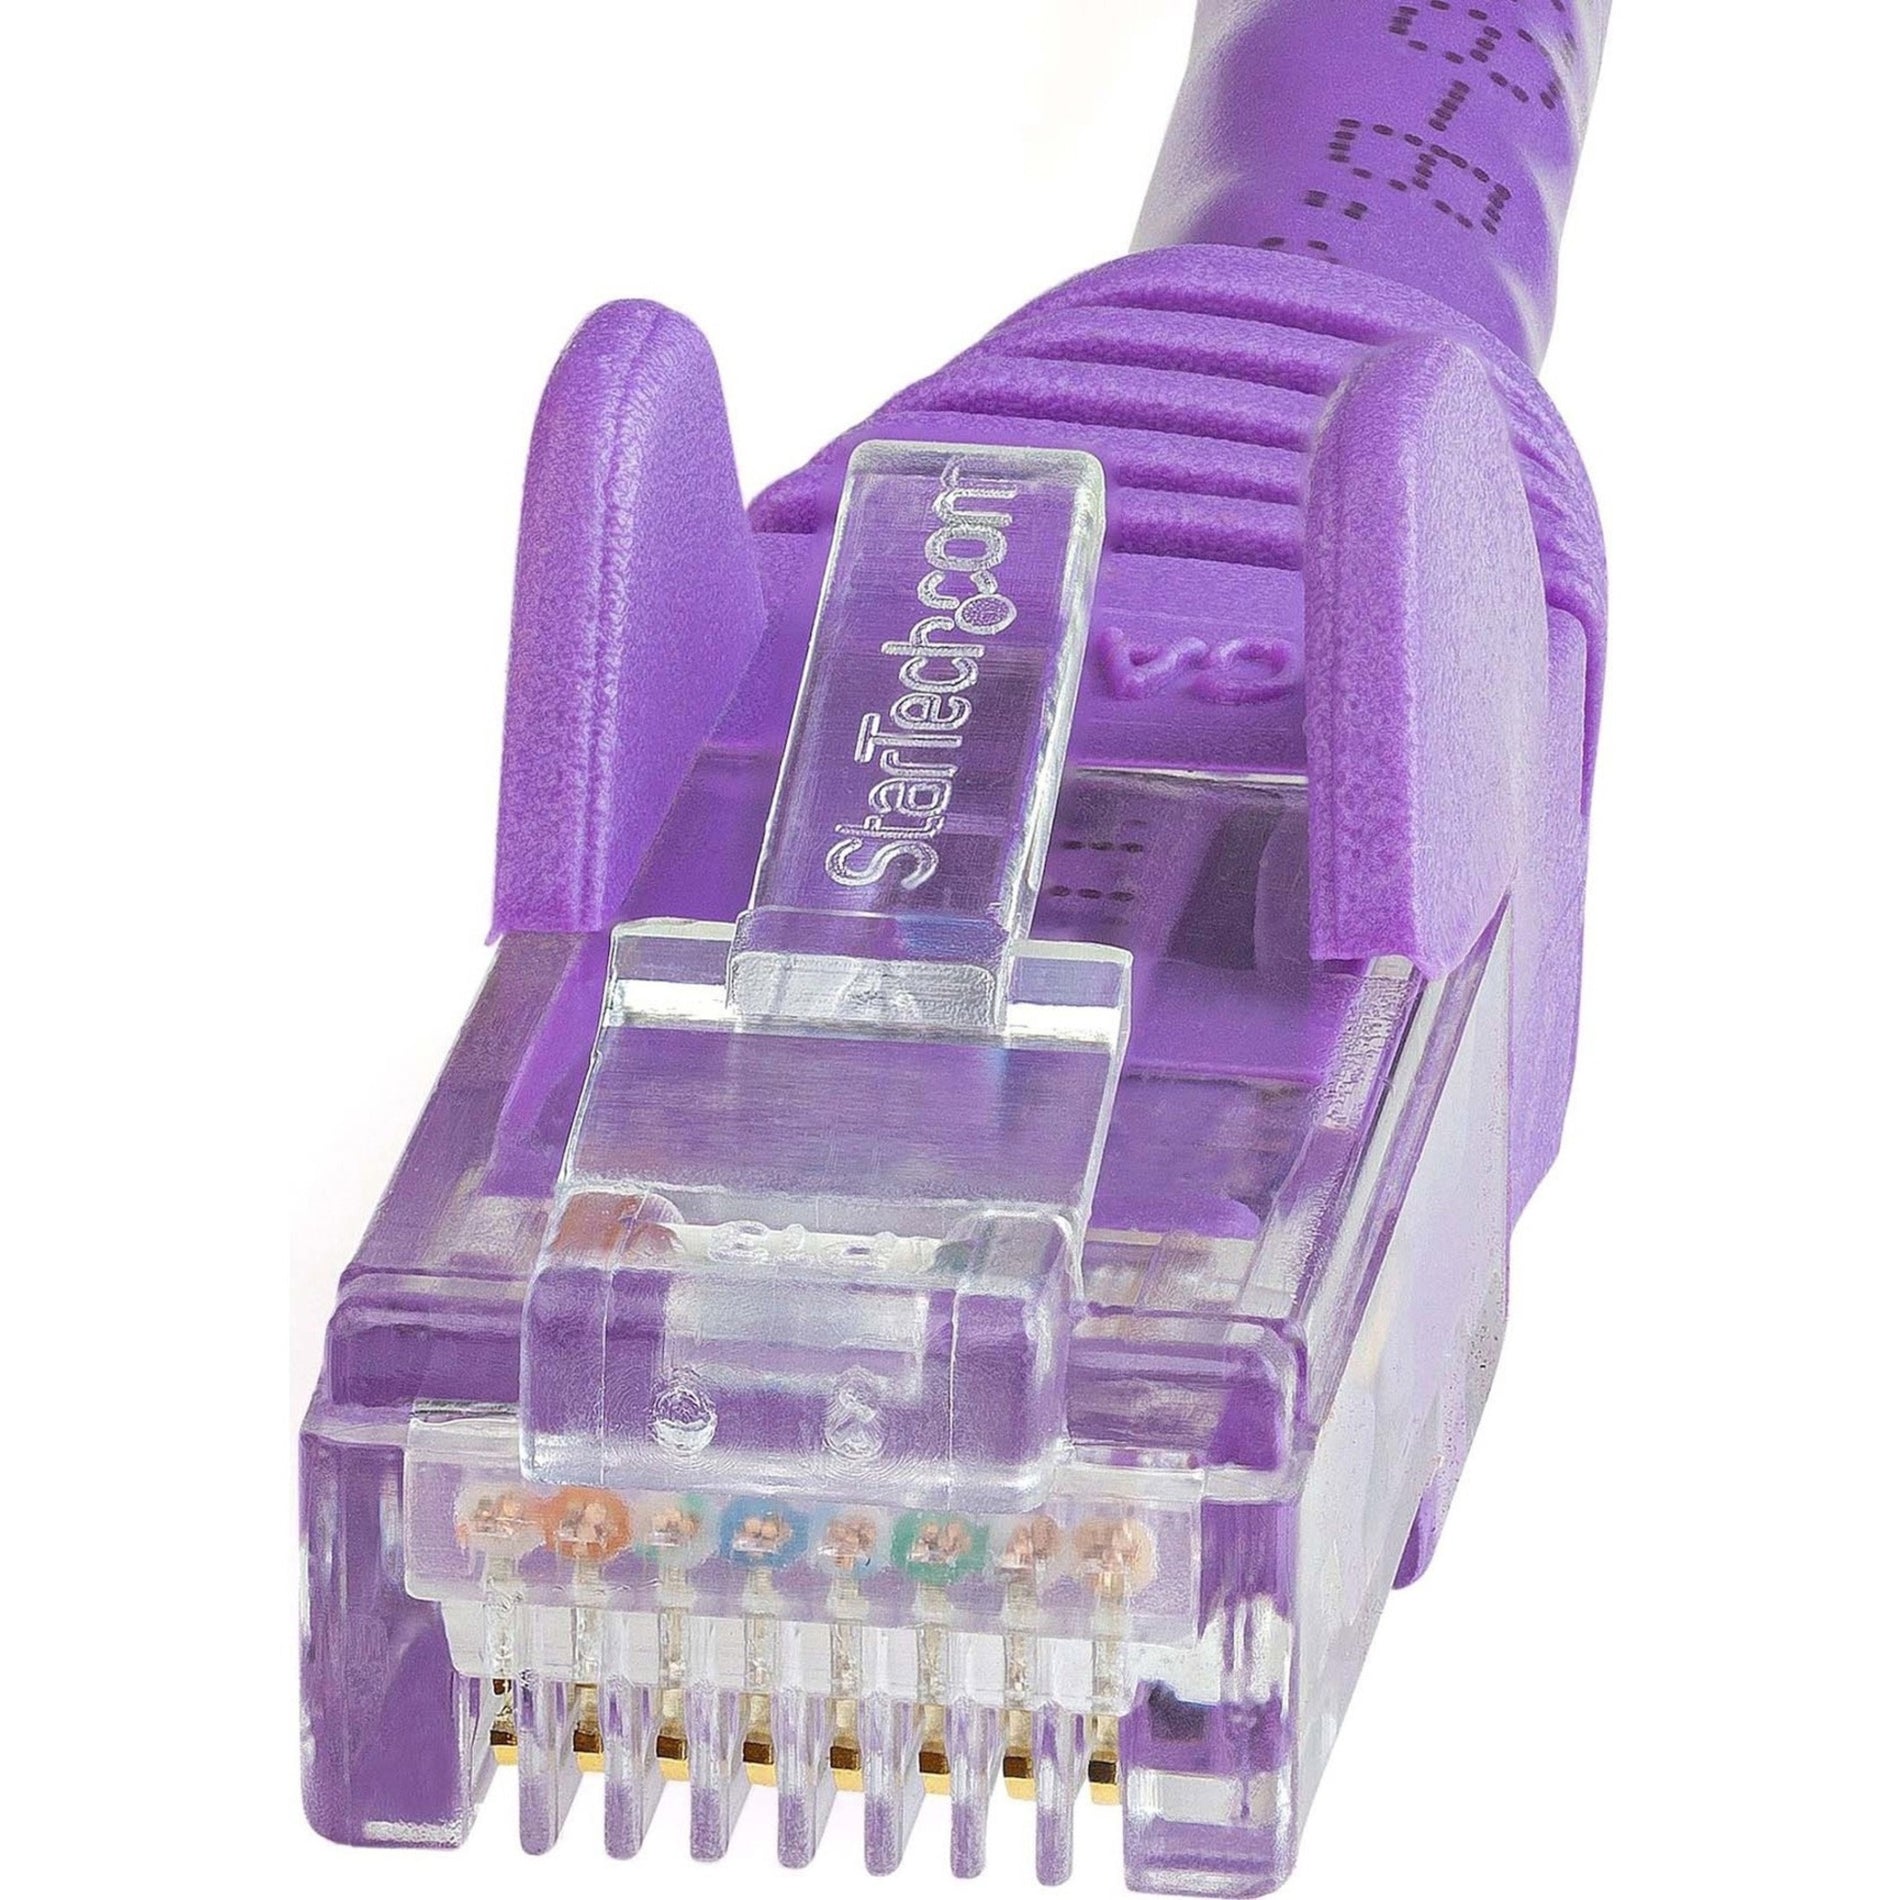 StarTech.com N6PATCH2PL Cat6 Network Cable, 2ft Purple Ethernet Cable, Snagless RJ45 Connectors